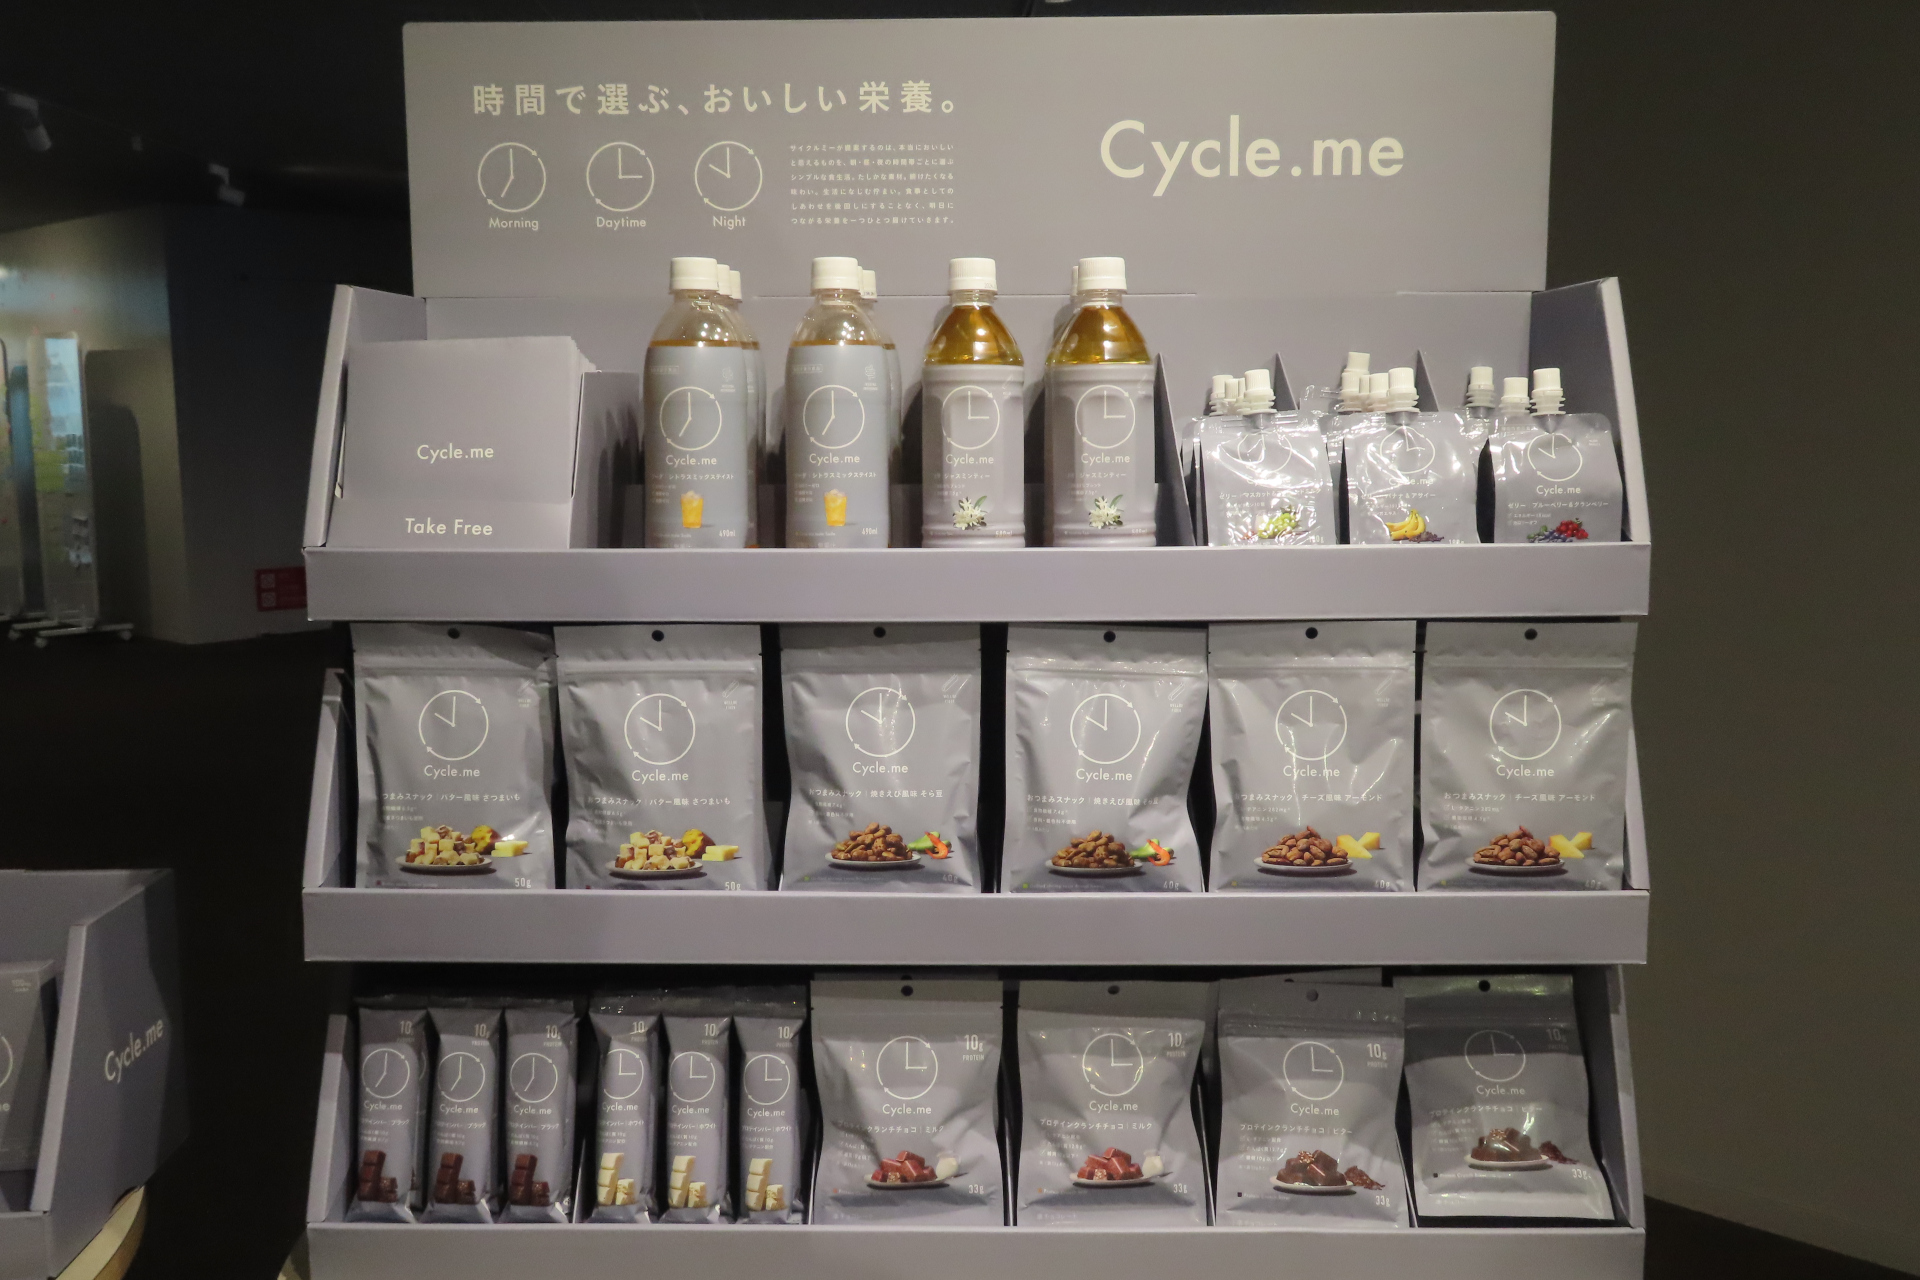 セブン-イレブン、時間栄養学に基づいた「Cycle.me」12品を全国展開